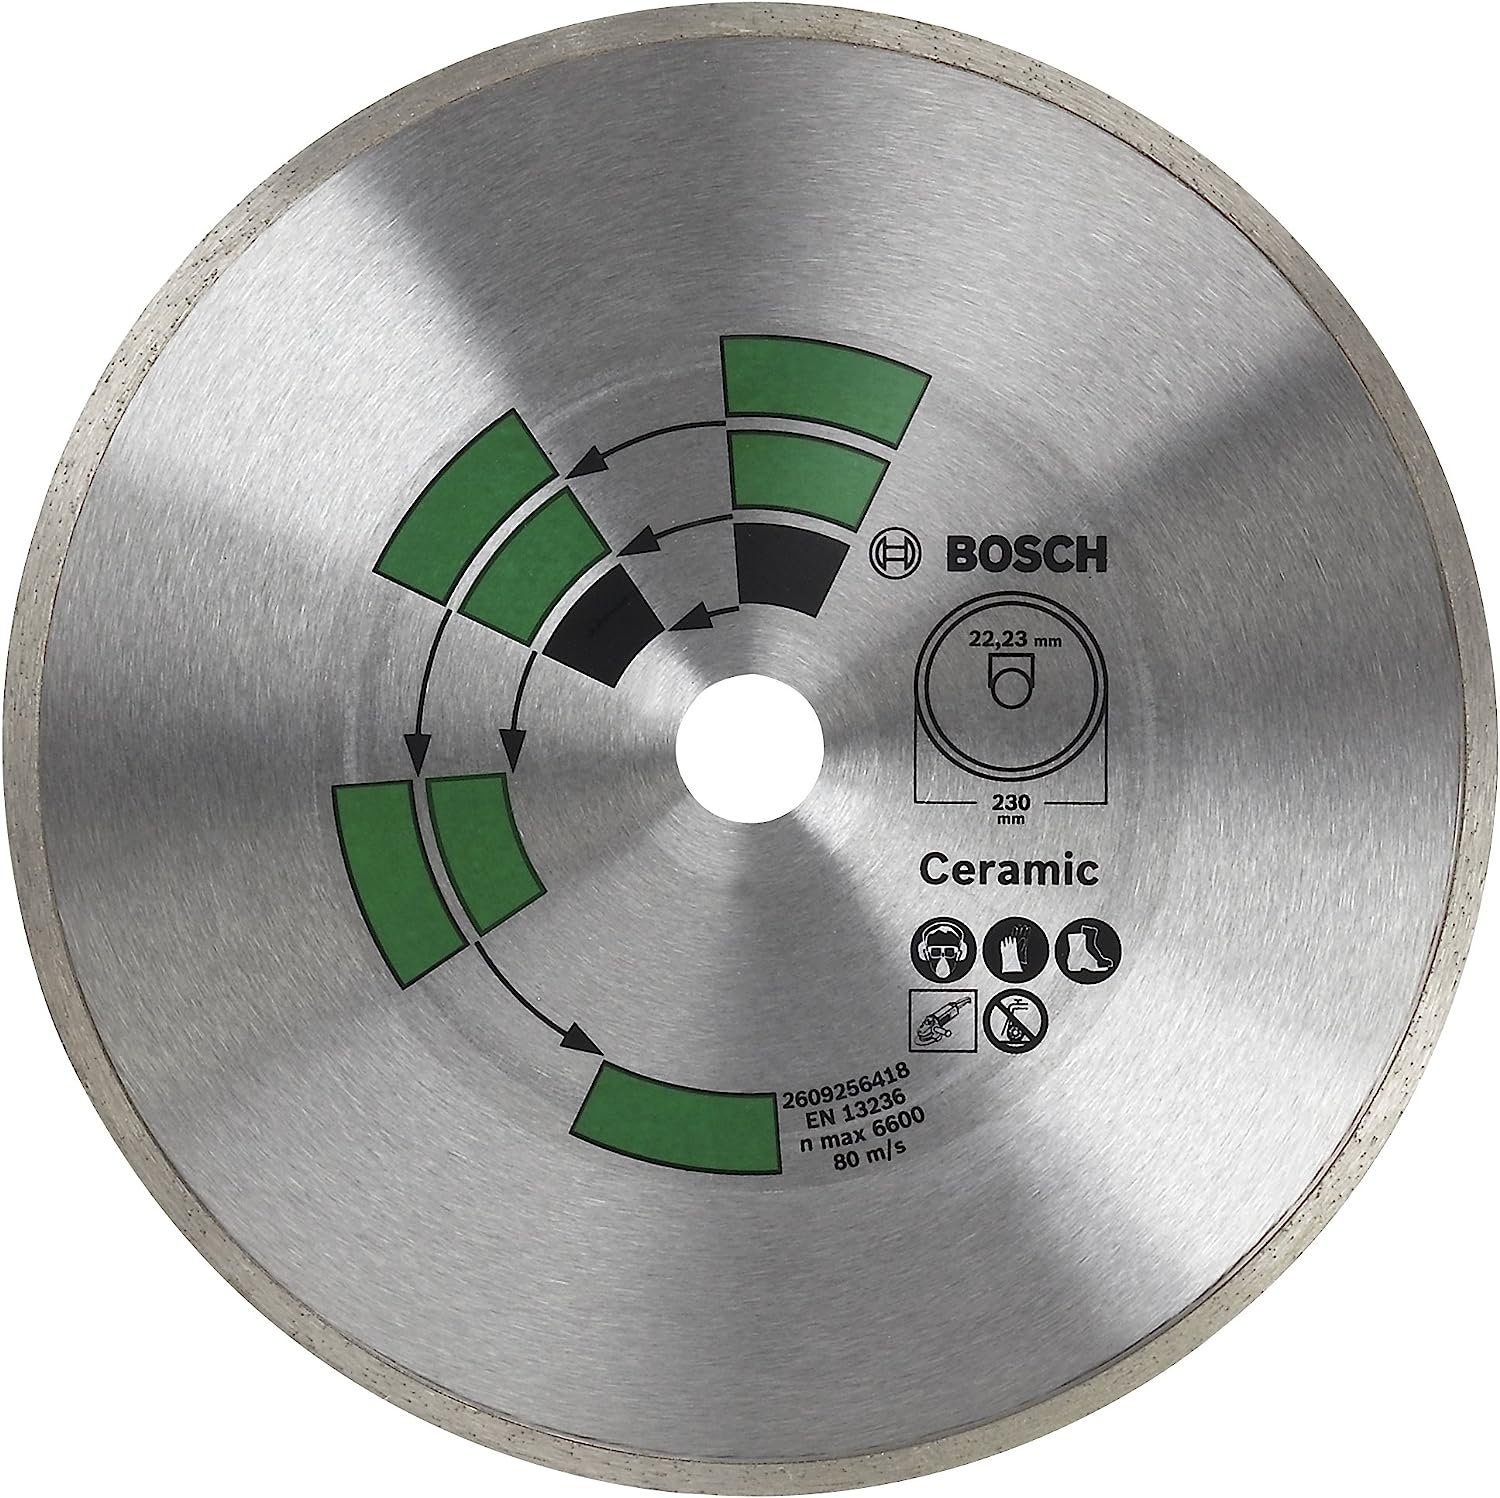 BOSCH Bohrfutter Bosch 2609256417 DIY Diamanttrennscheibe Fliesen Top Keramik, 125 mm